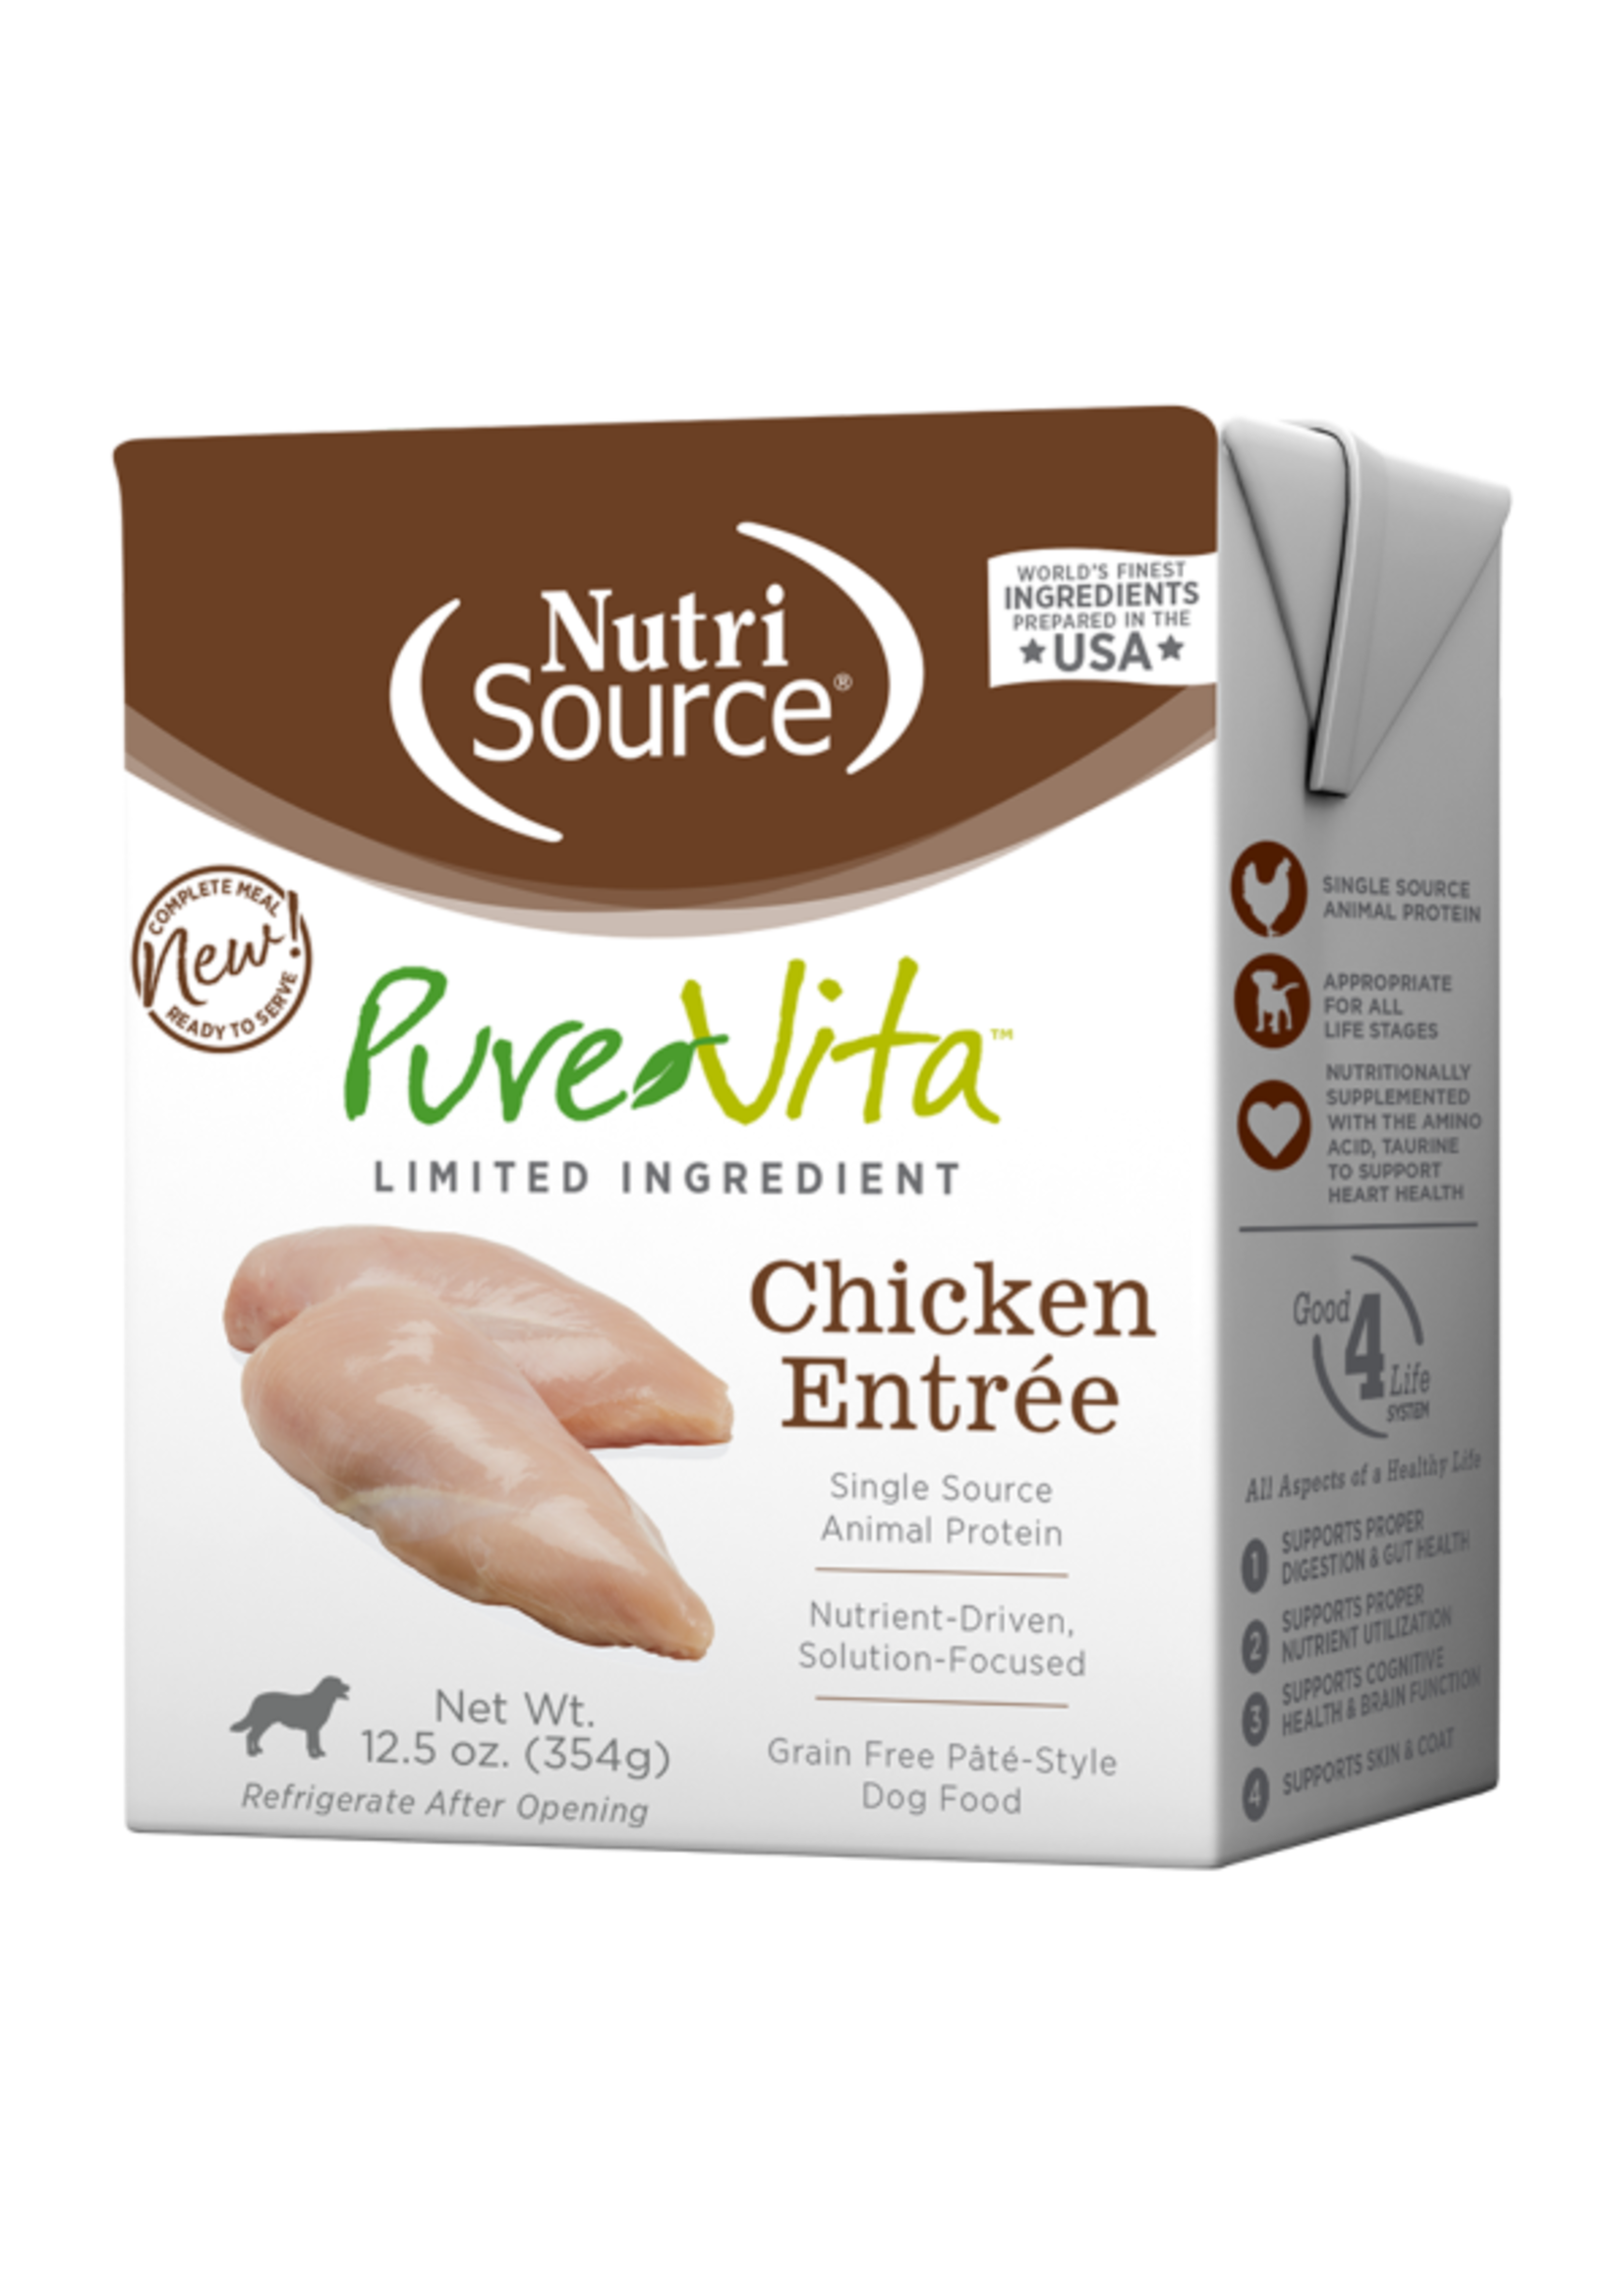 NutriSource PureVita Sans grains Style pâté Entrée de poulet pour chiens